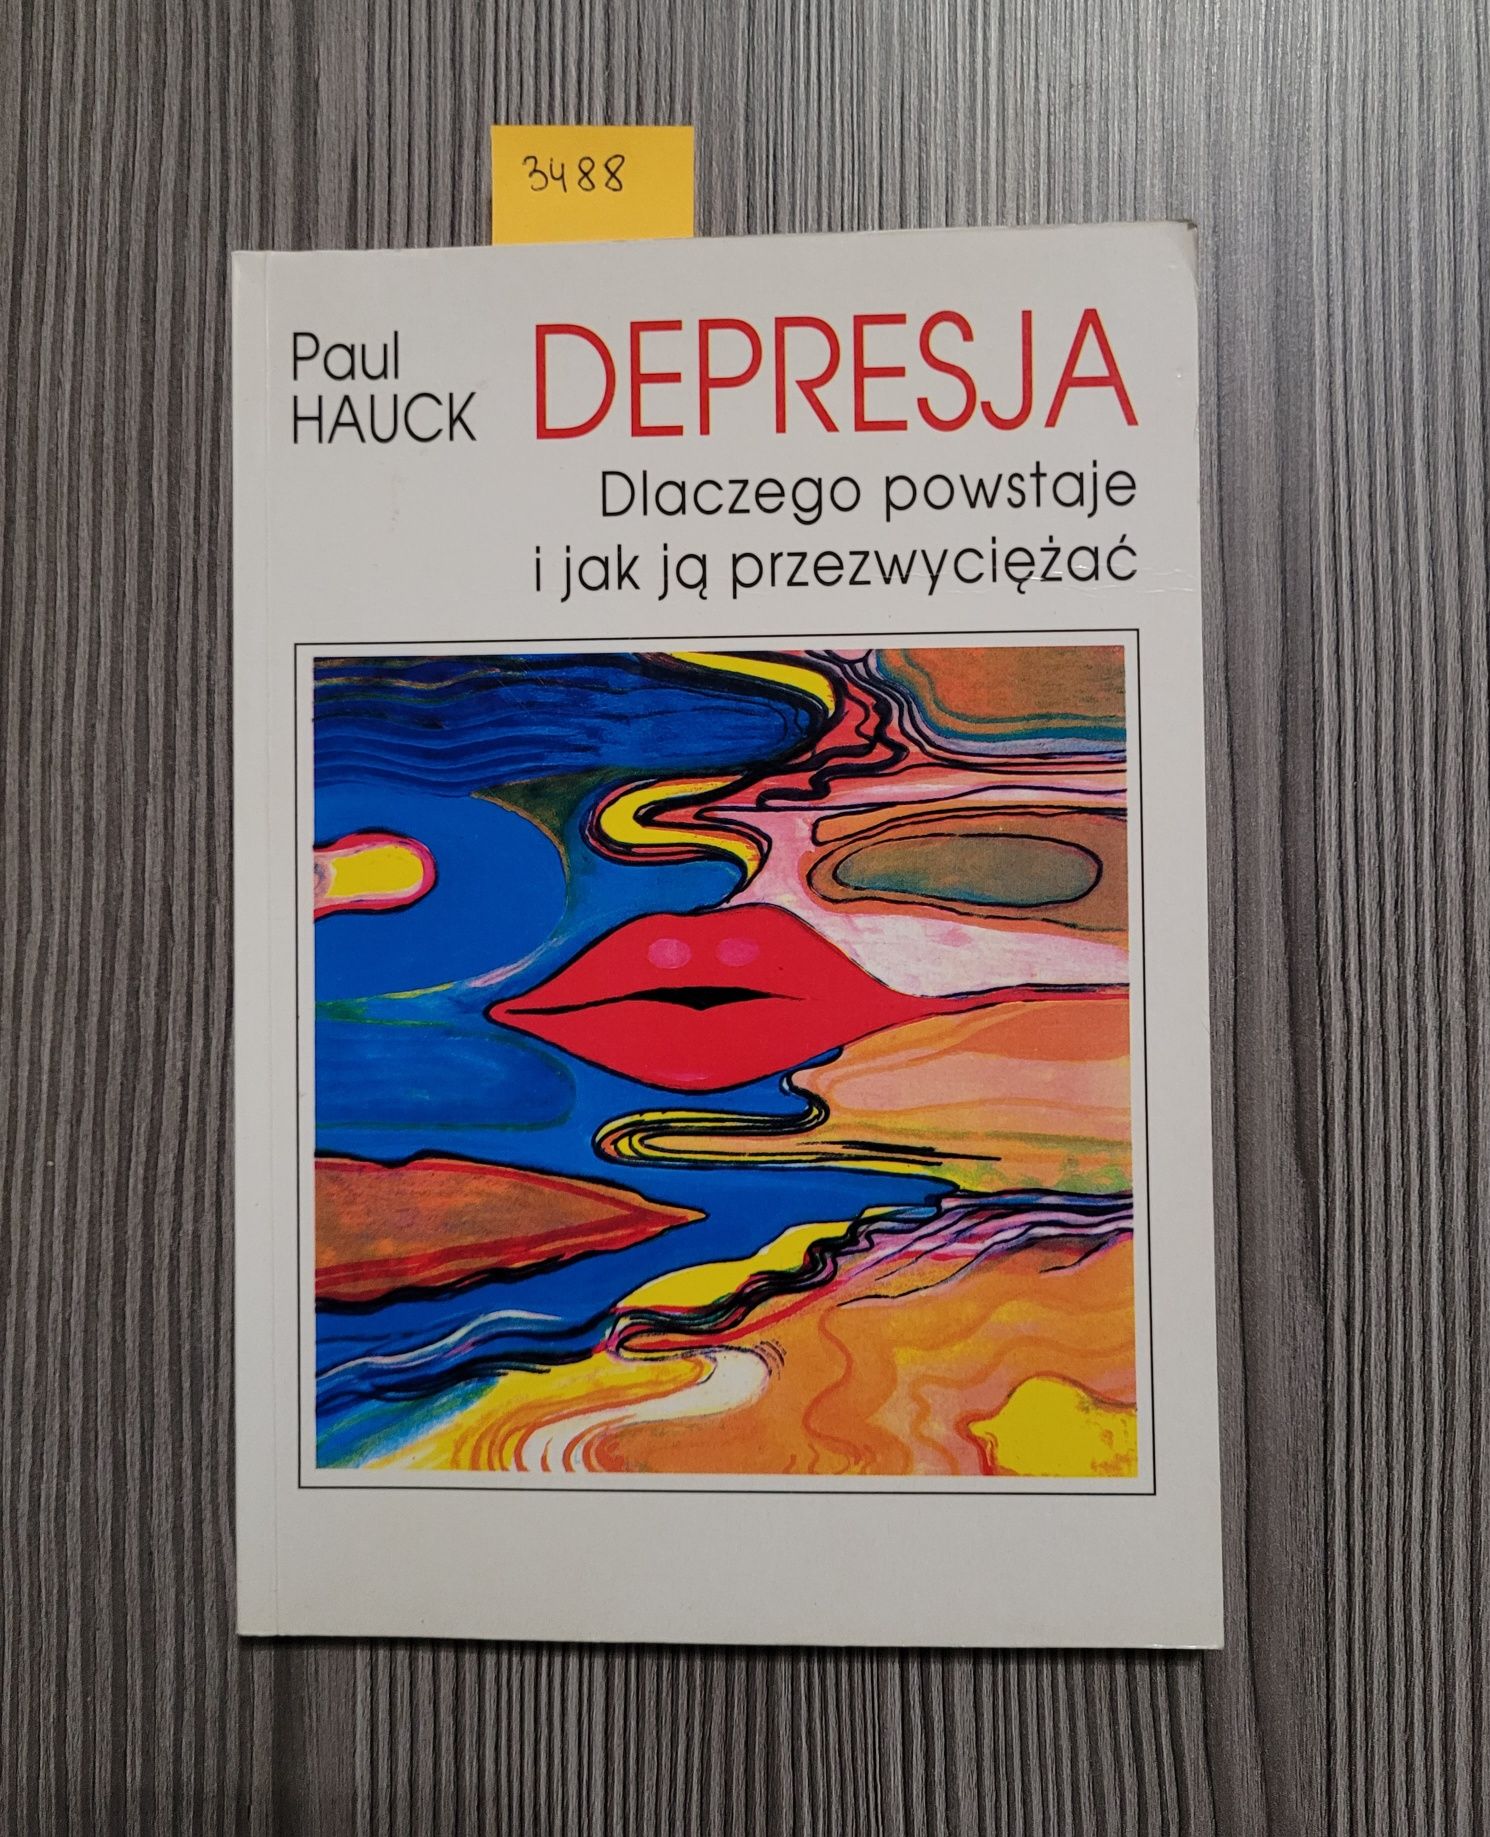 3488. "Depresja" Paul Hauck